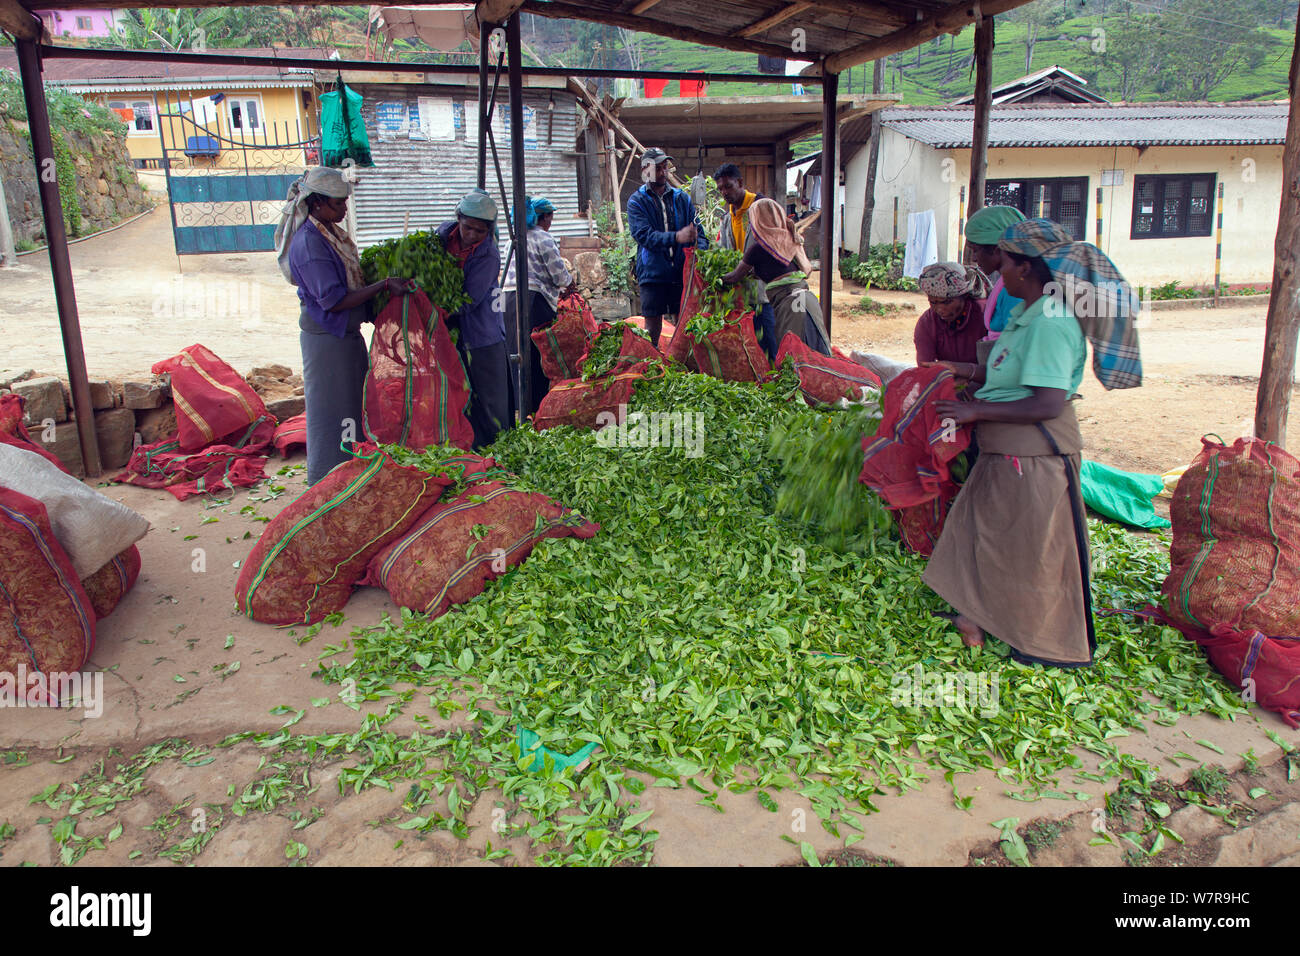 Tea (Camellia sinensis) harvesting in Sri Lanka, March 2013 Stock Photo